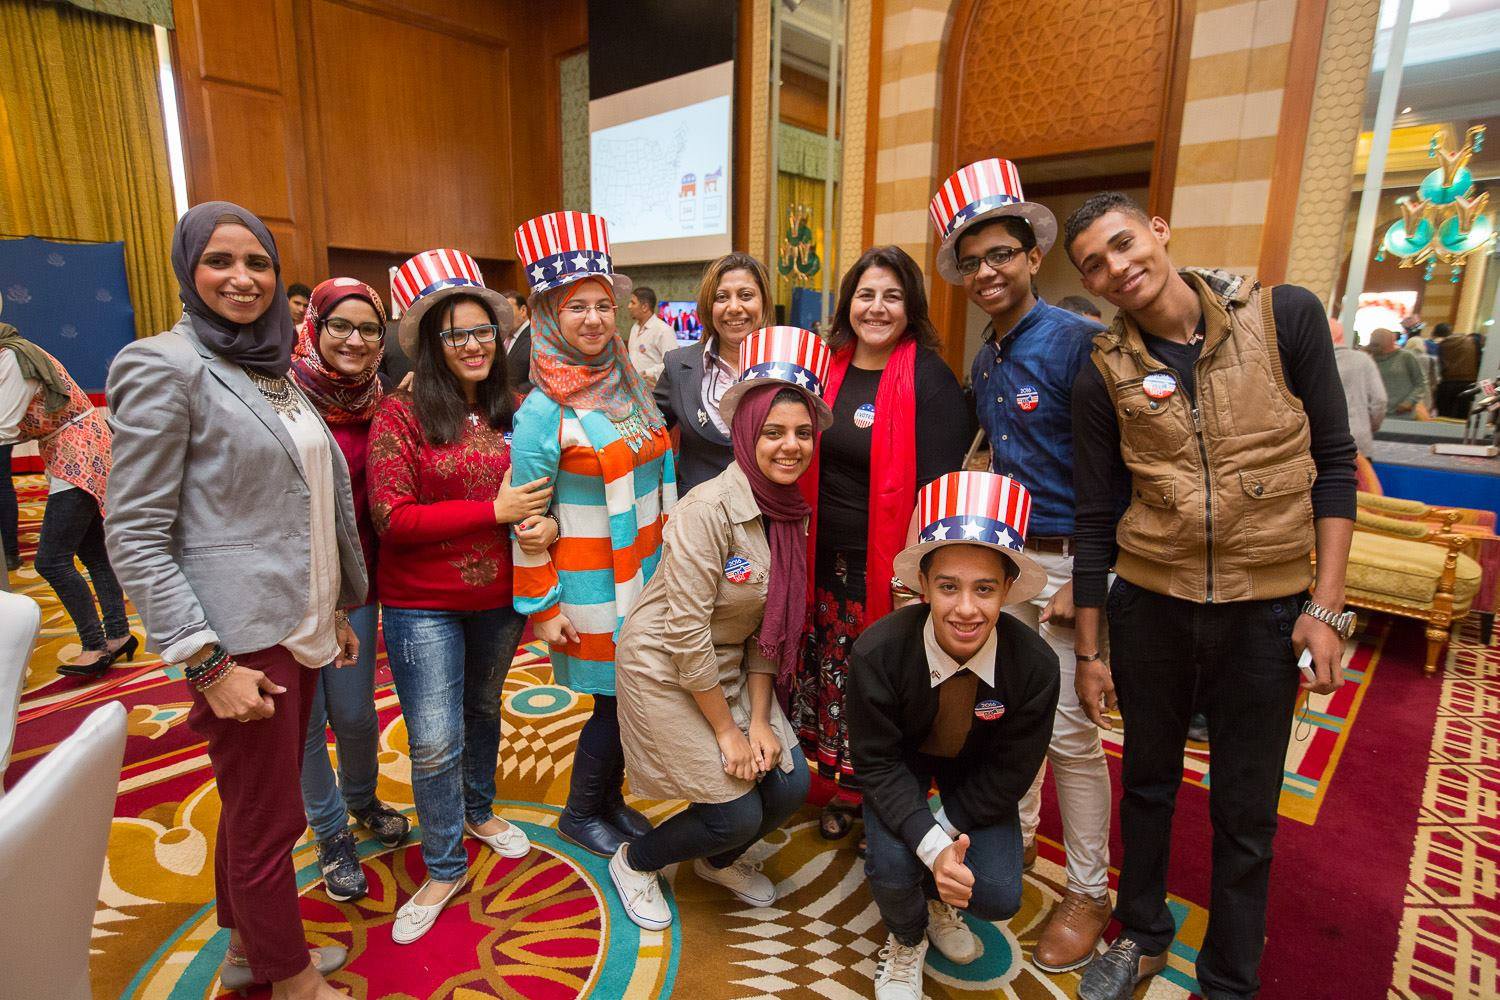 الاحتفال بالانتخابات الأمريكية مع بعض الأصدقاء المصريين فى نوفمبر